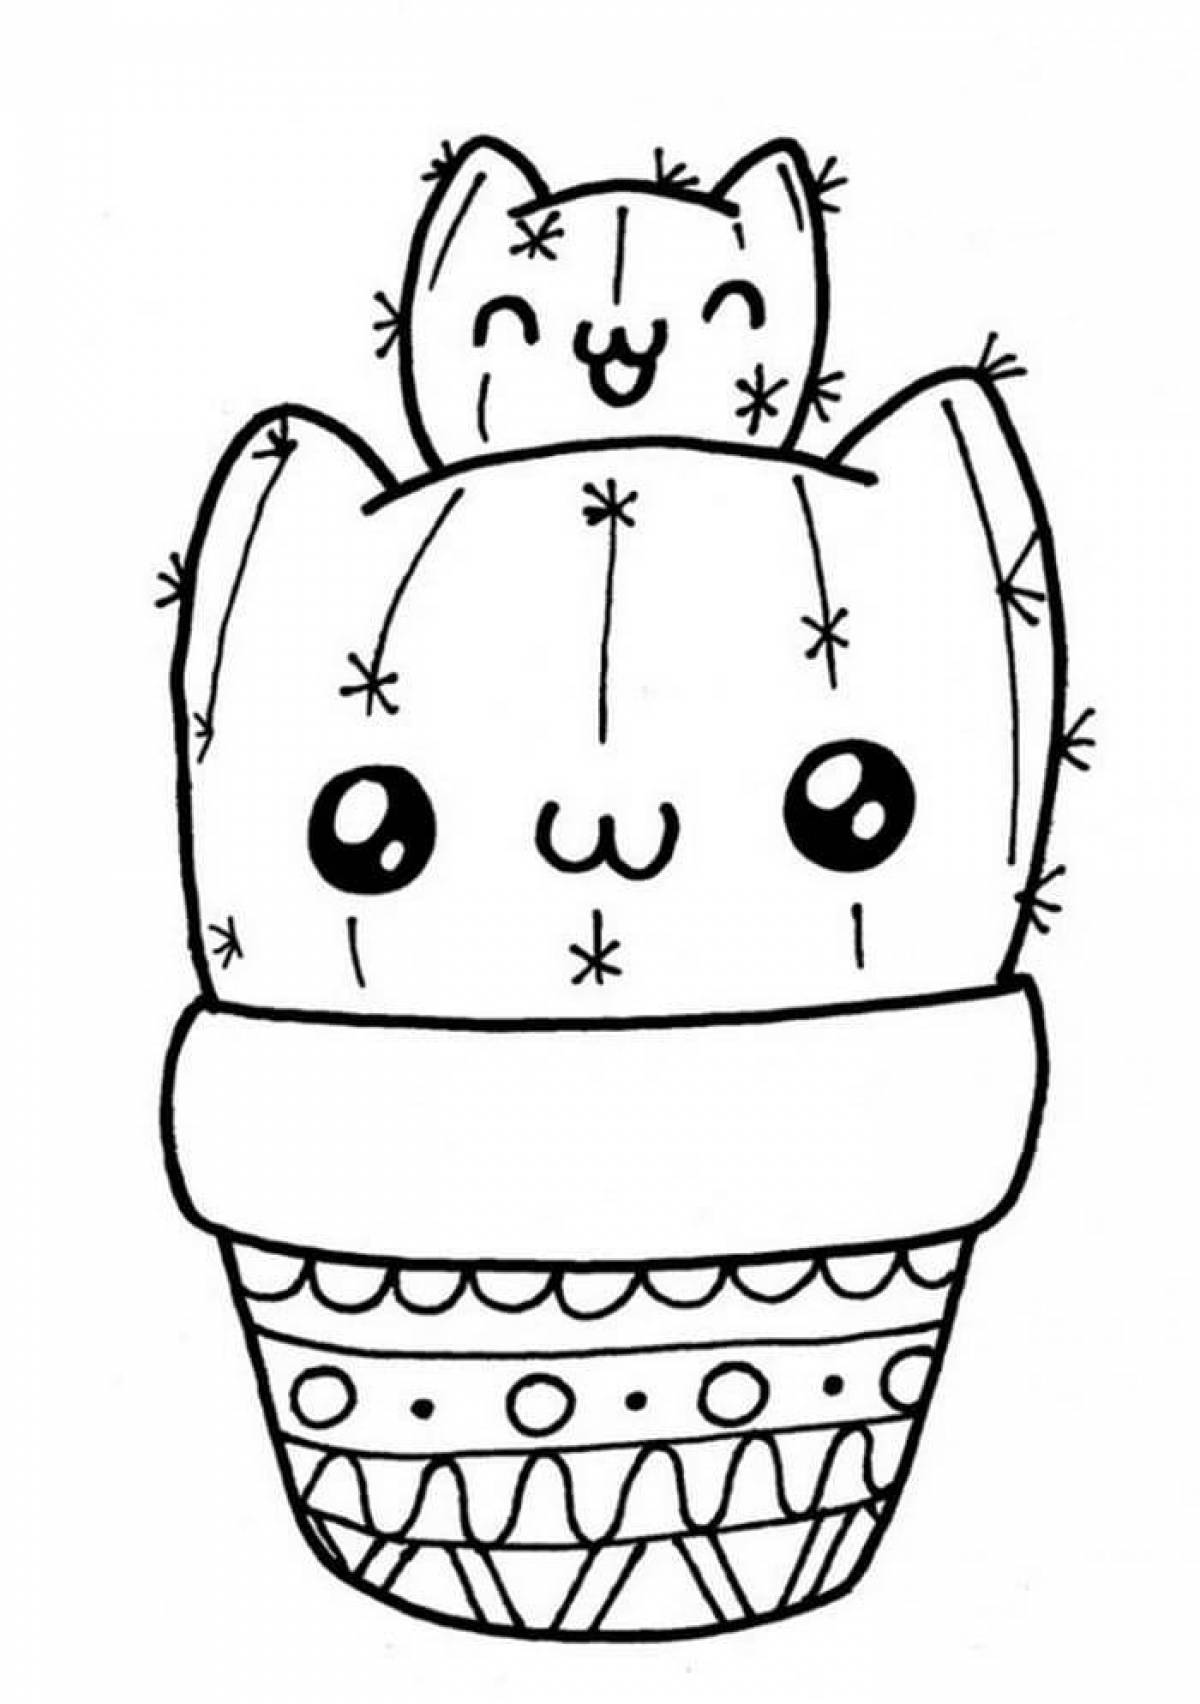 Cozy cactus coloring page